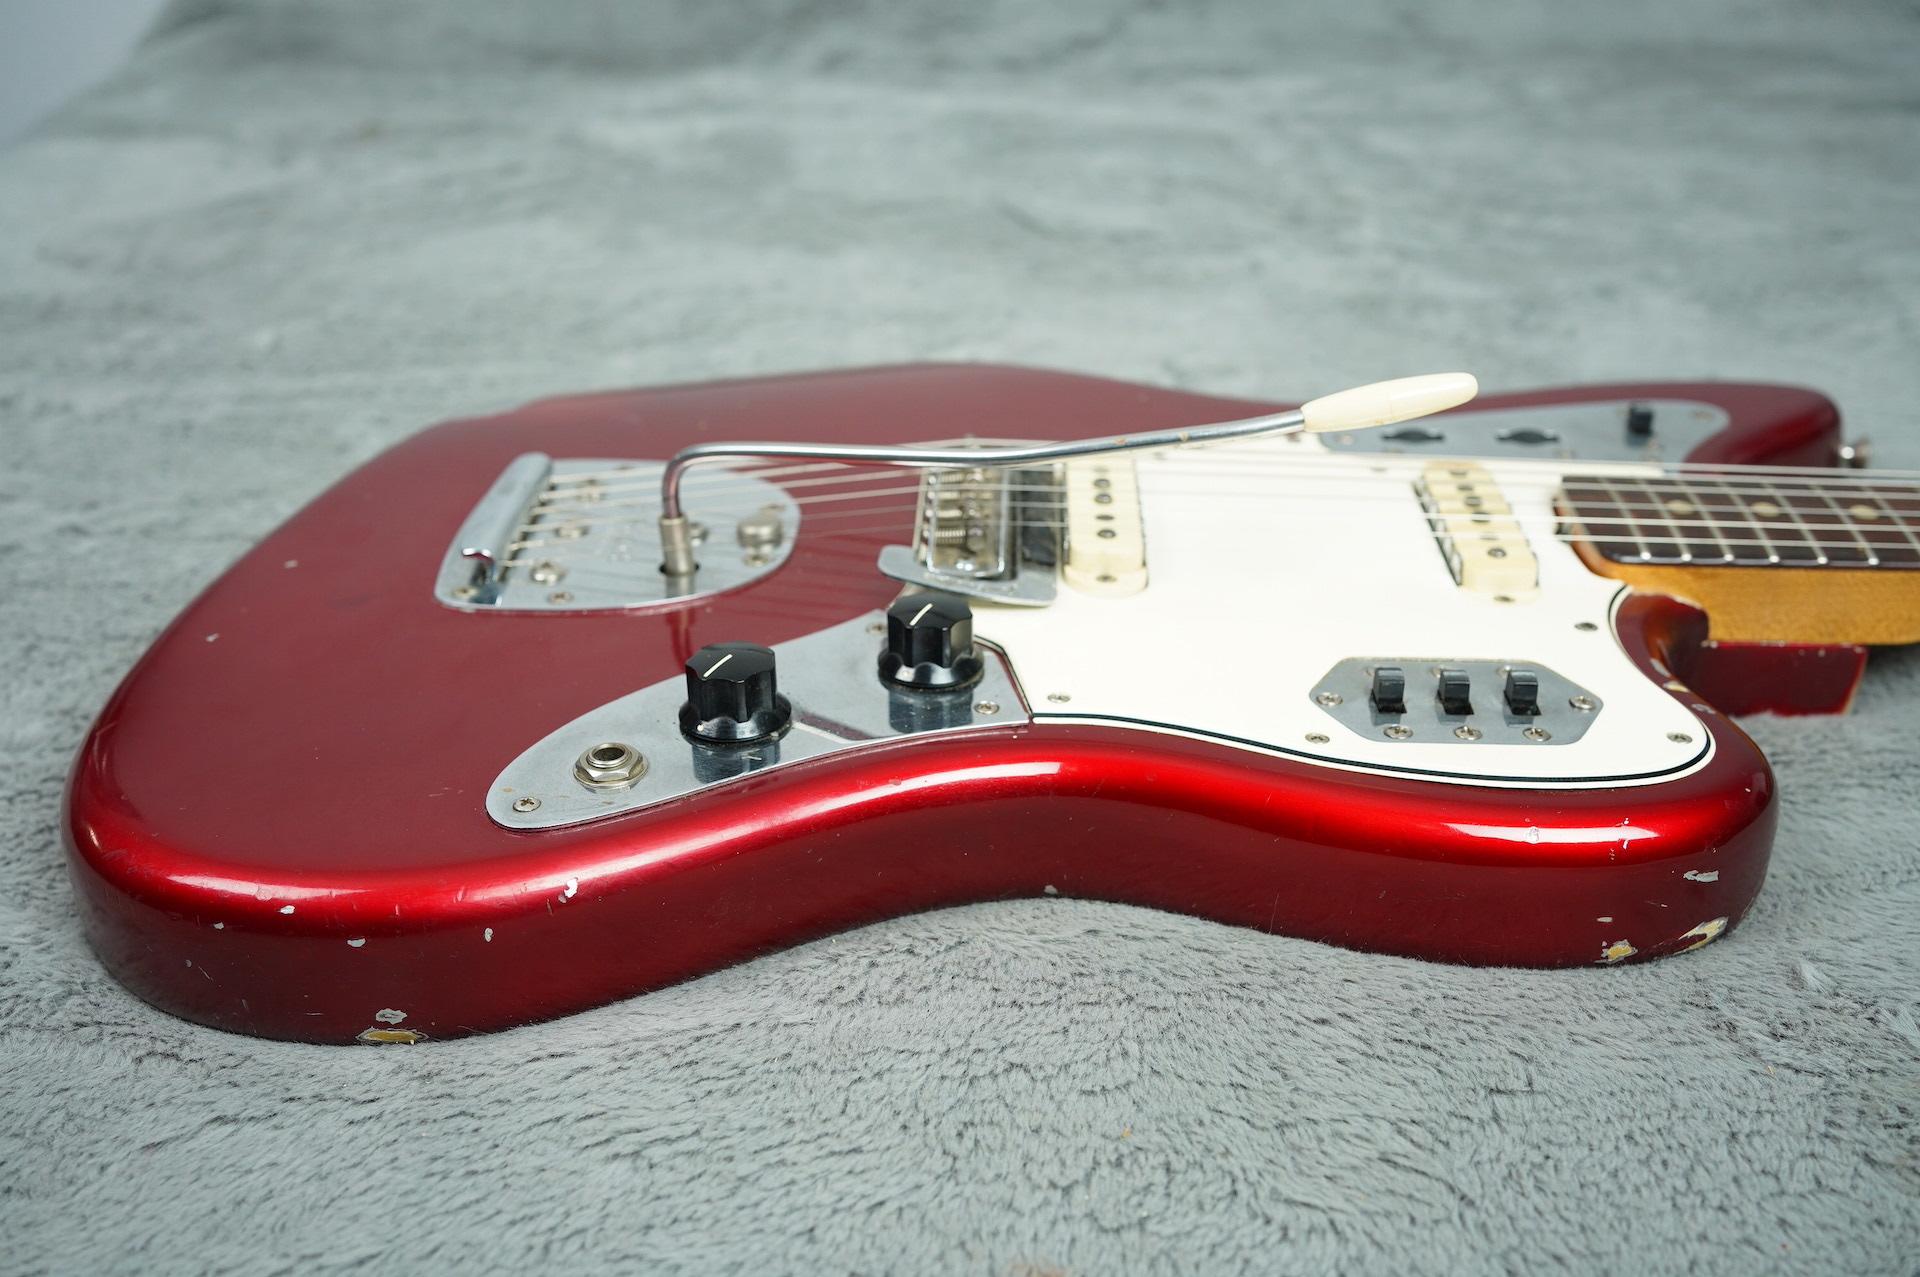 1965 Fender Jaguar Candy Apple Red